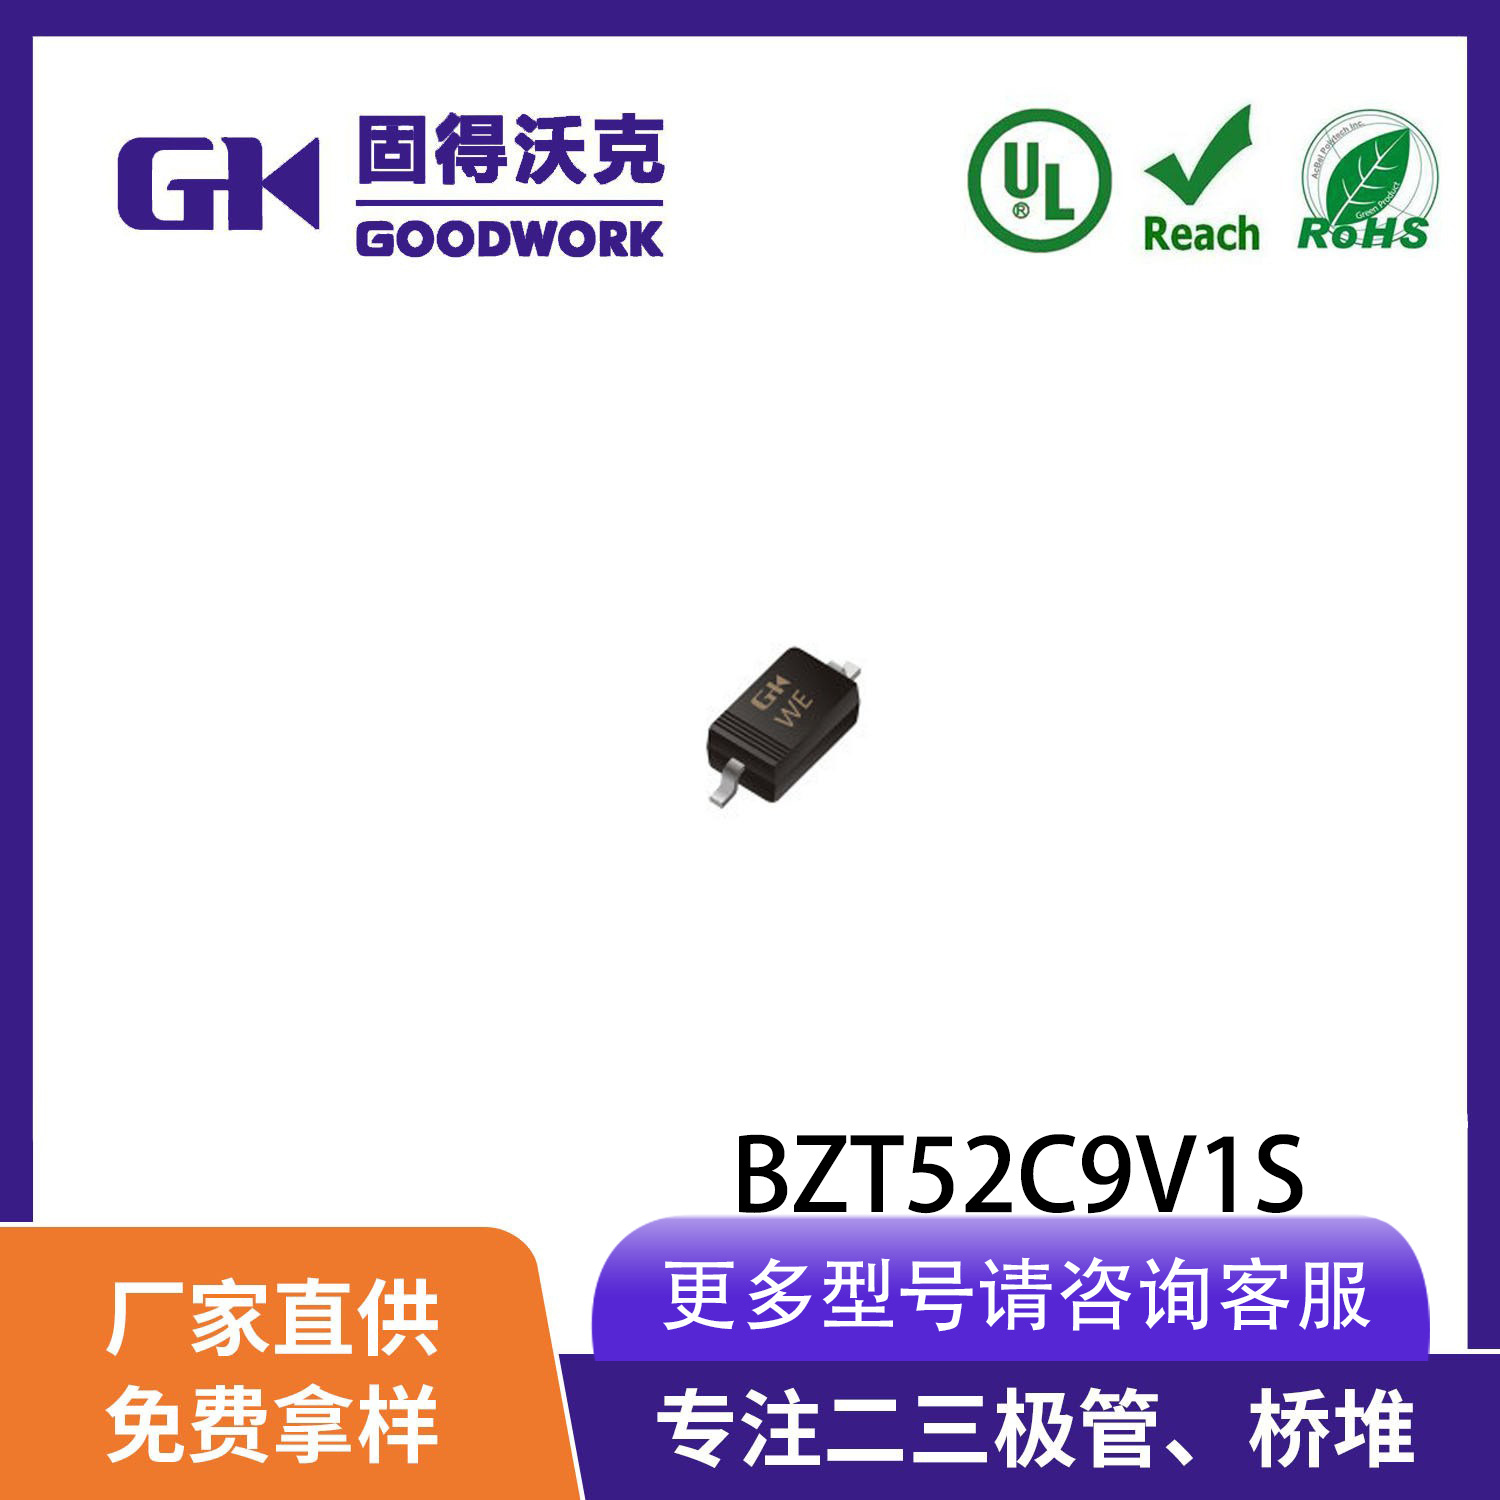 现货供应GK品牌BZT52C9V1S 稳压二极管 SOD323封装 厂家直销